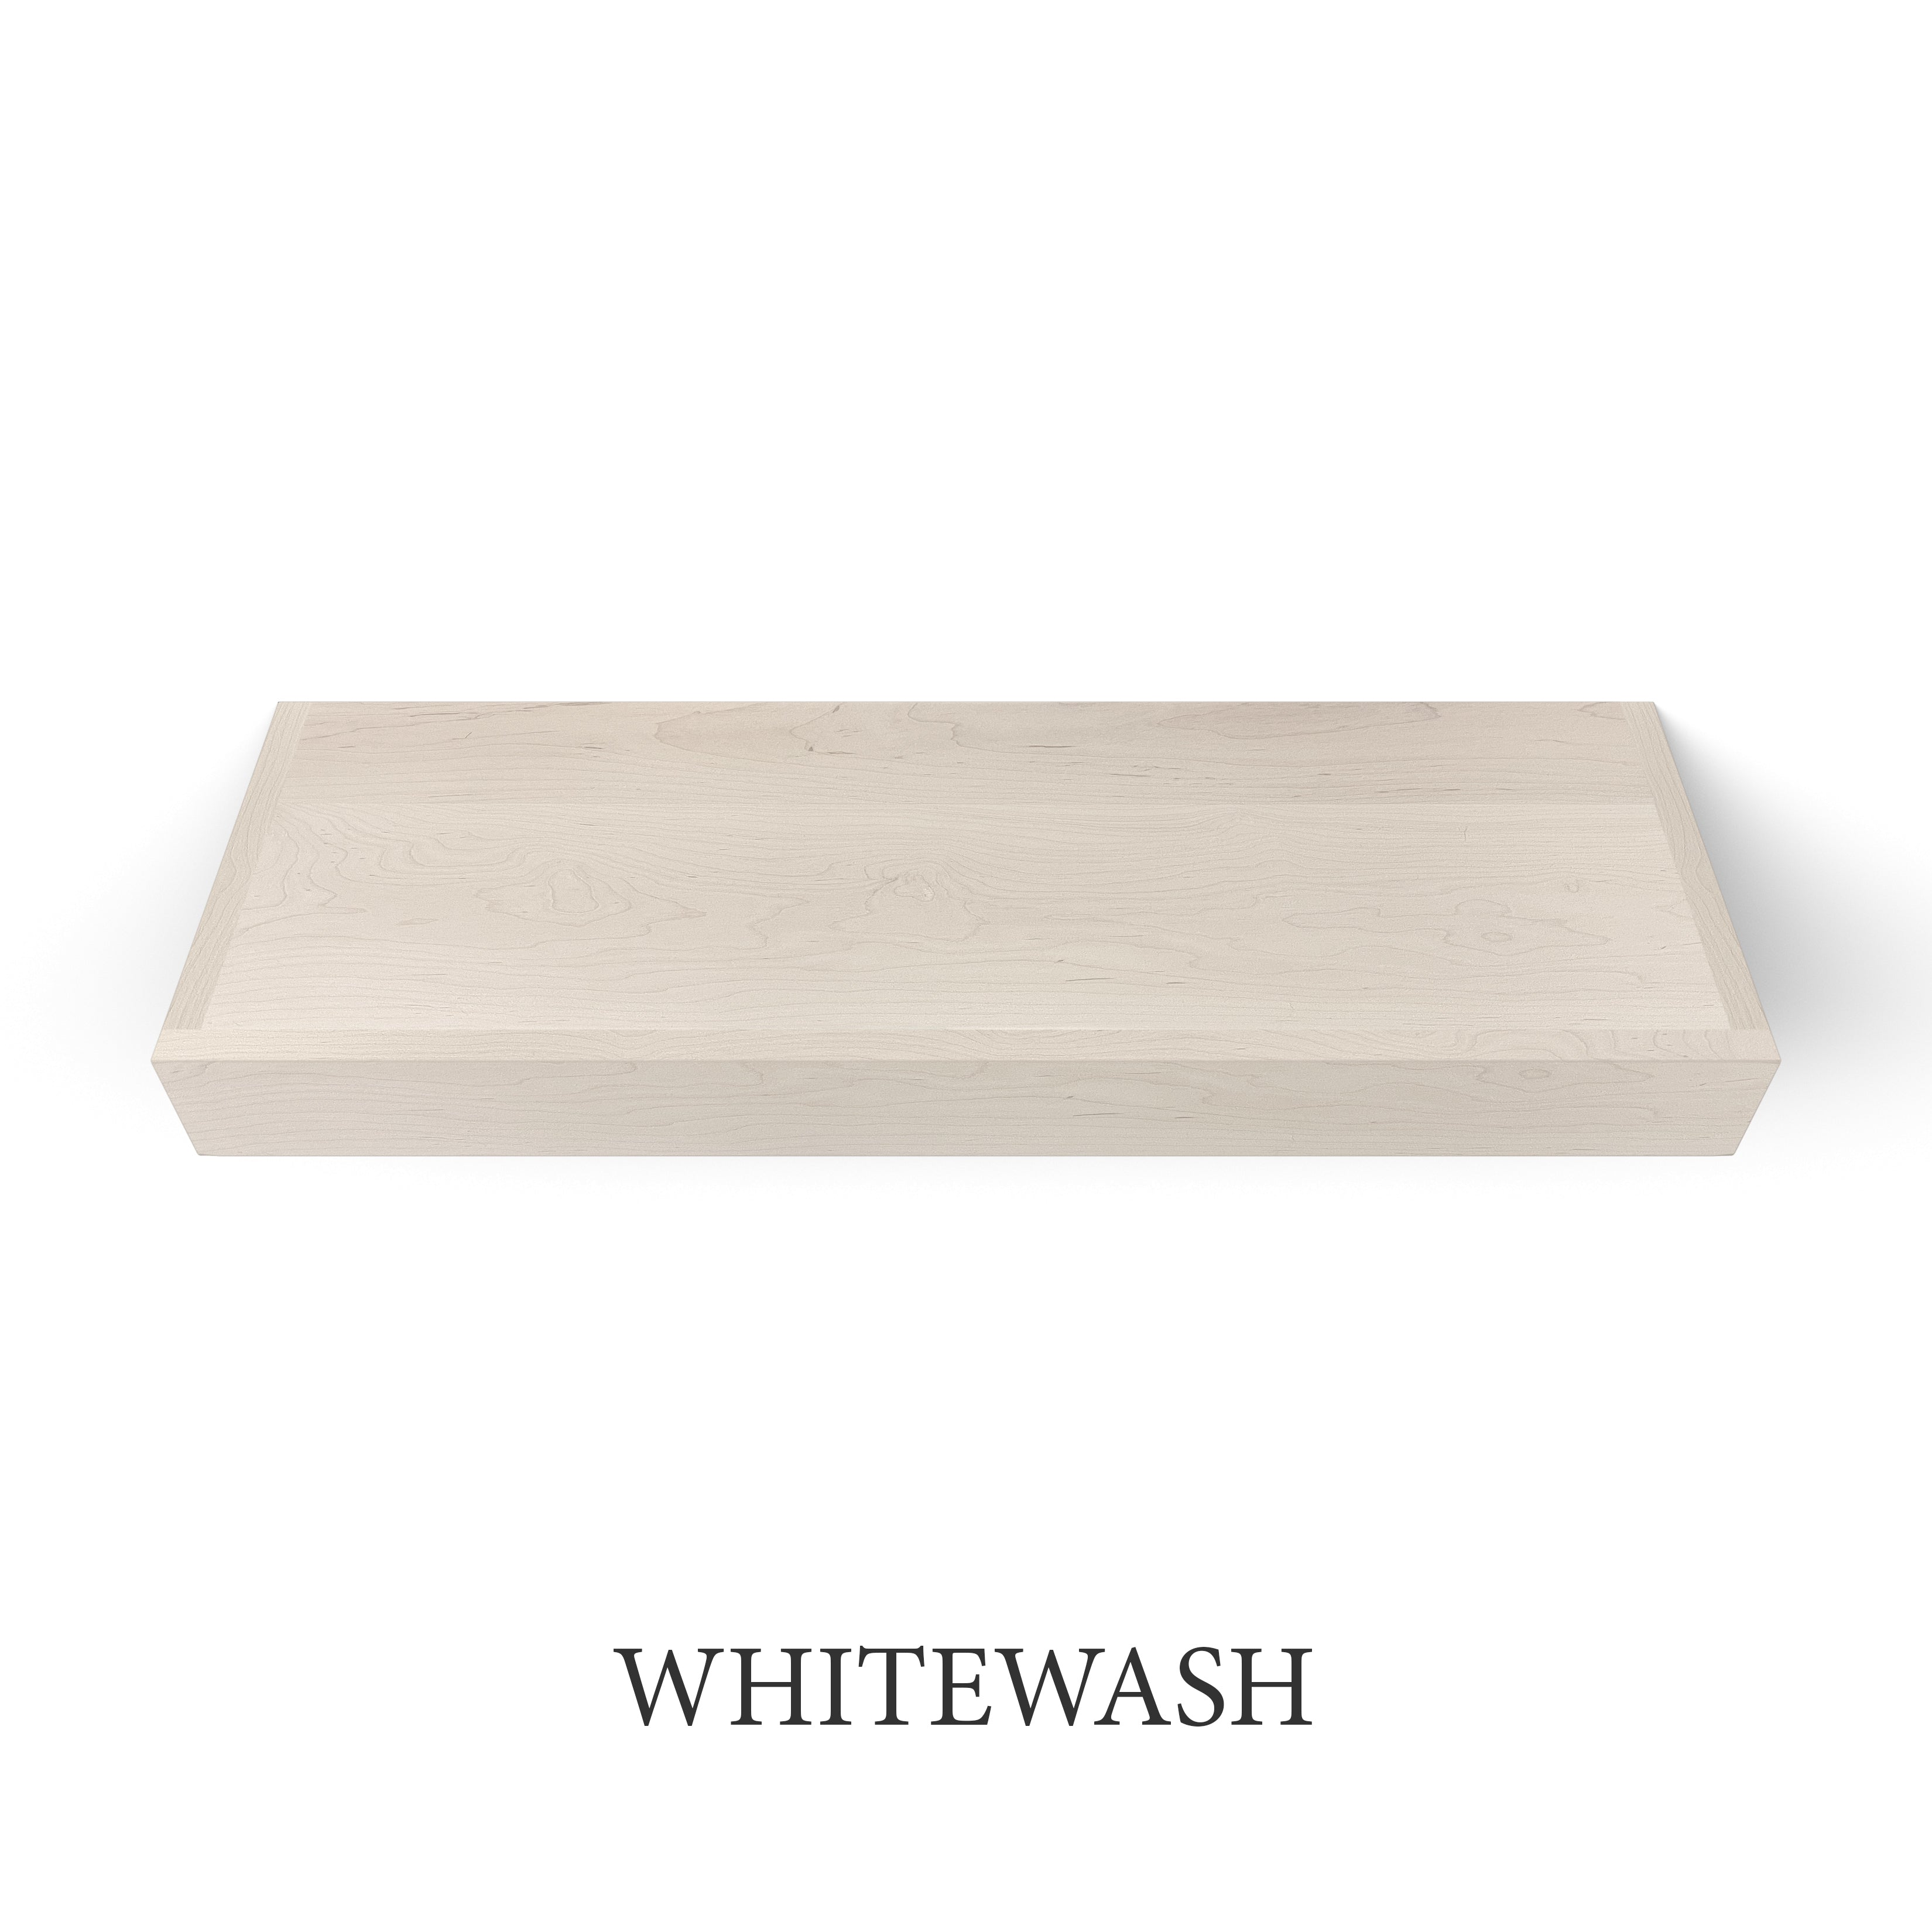 whitewash Maple 3 Inch LED Lighted Floating Shelf - Battery